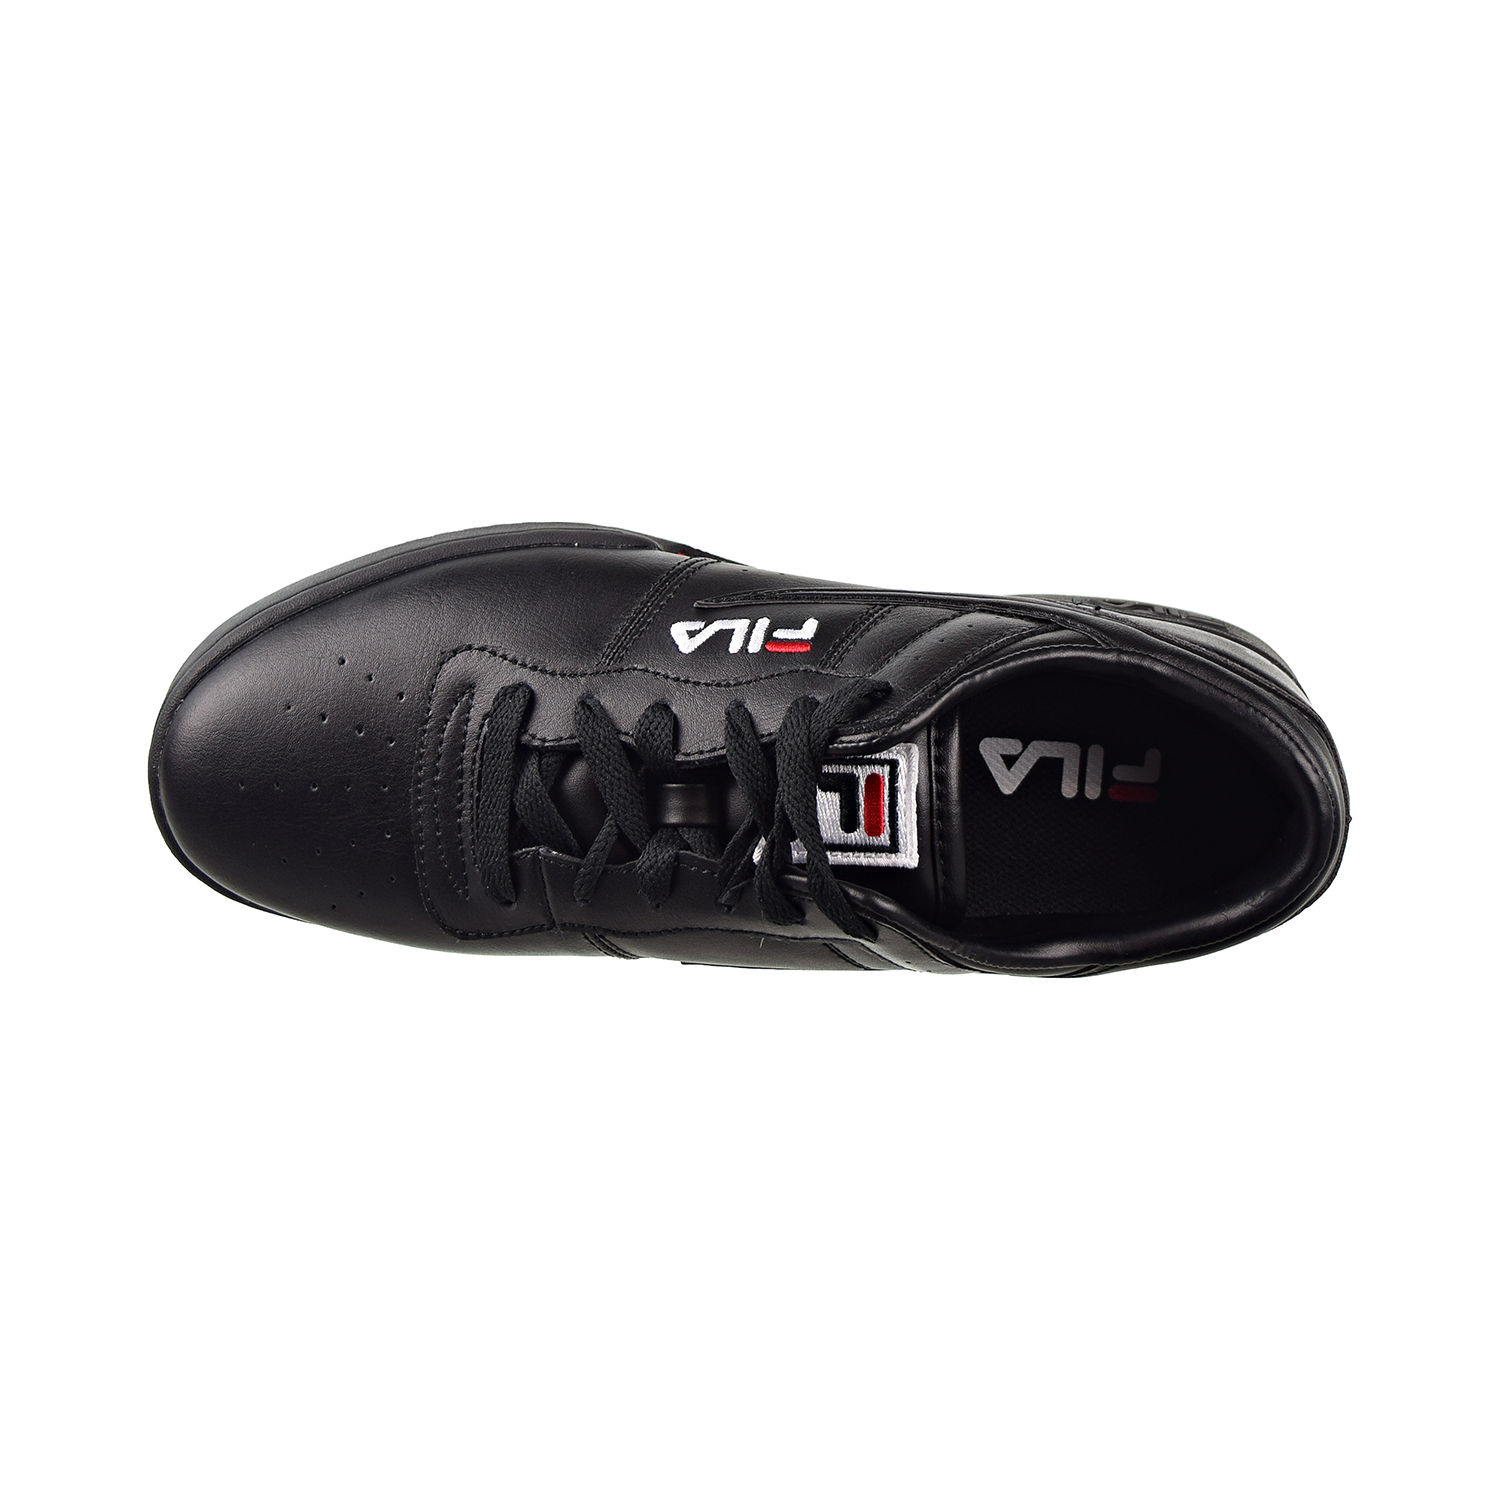 Fila Original Fitness Men's Sneakers Black/White/Red 11f16lt-970